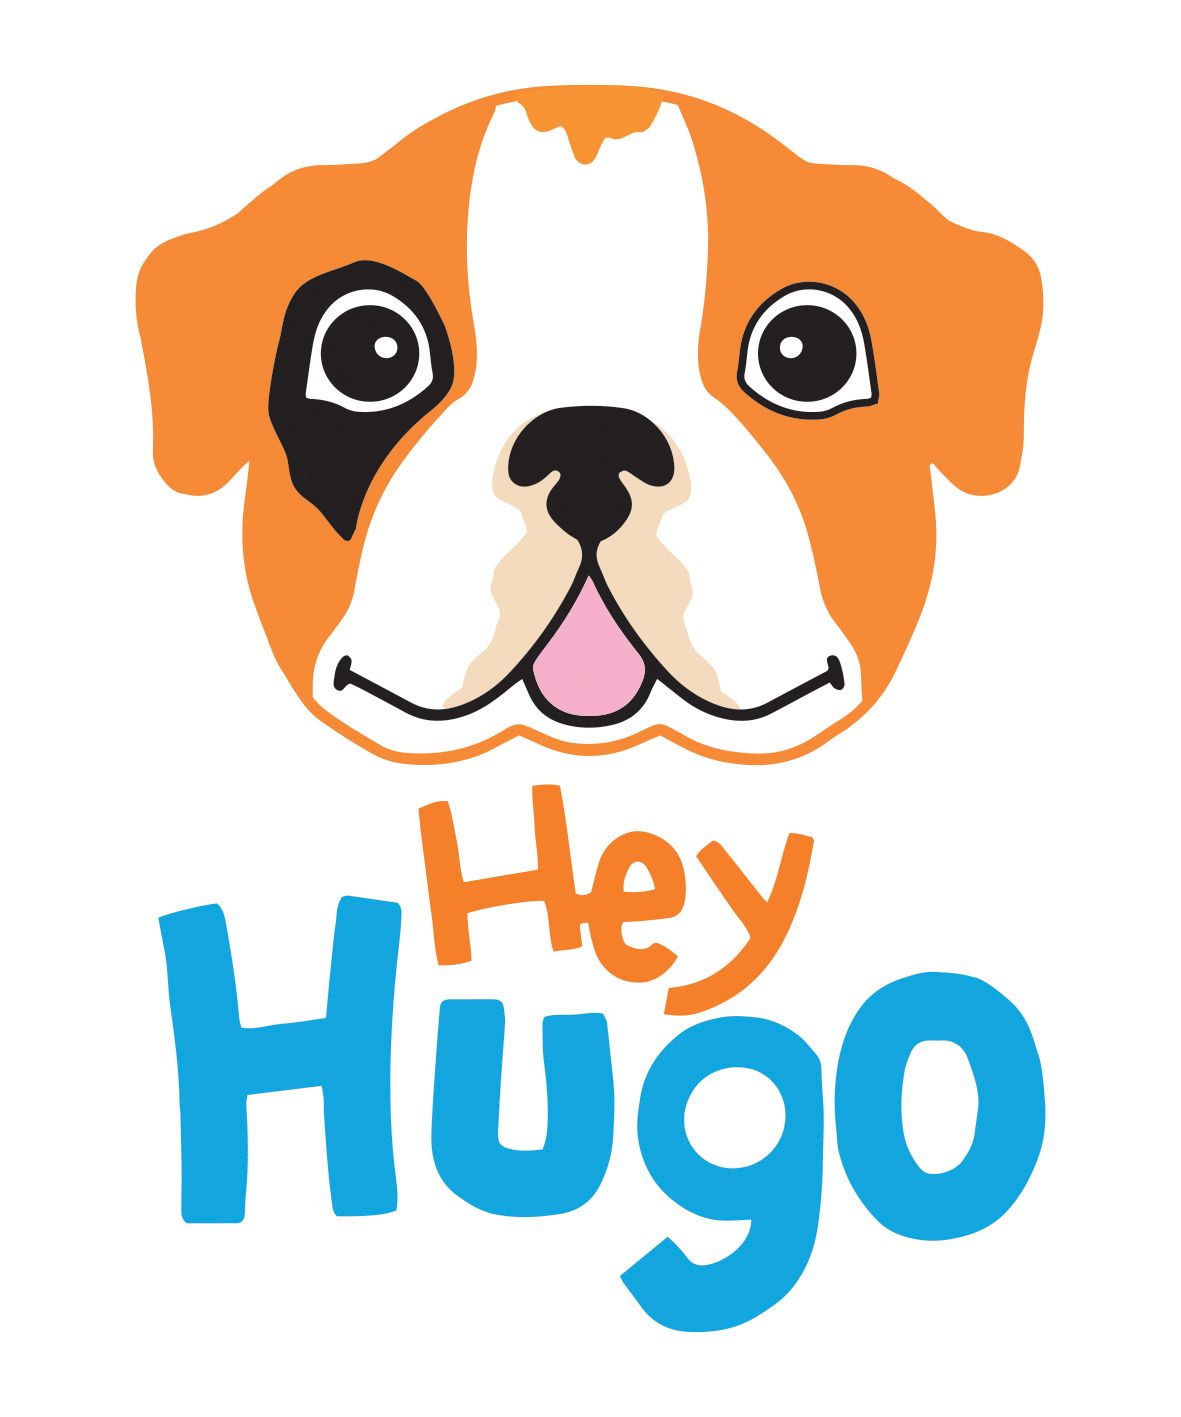 Hey Hugo